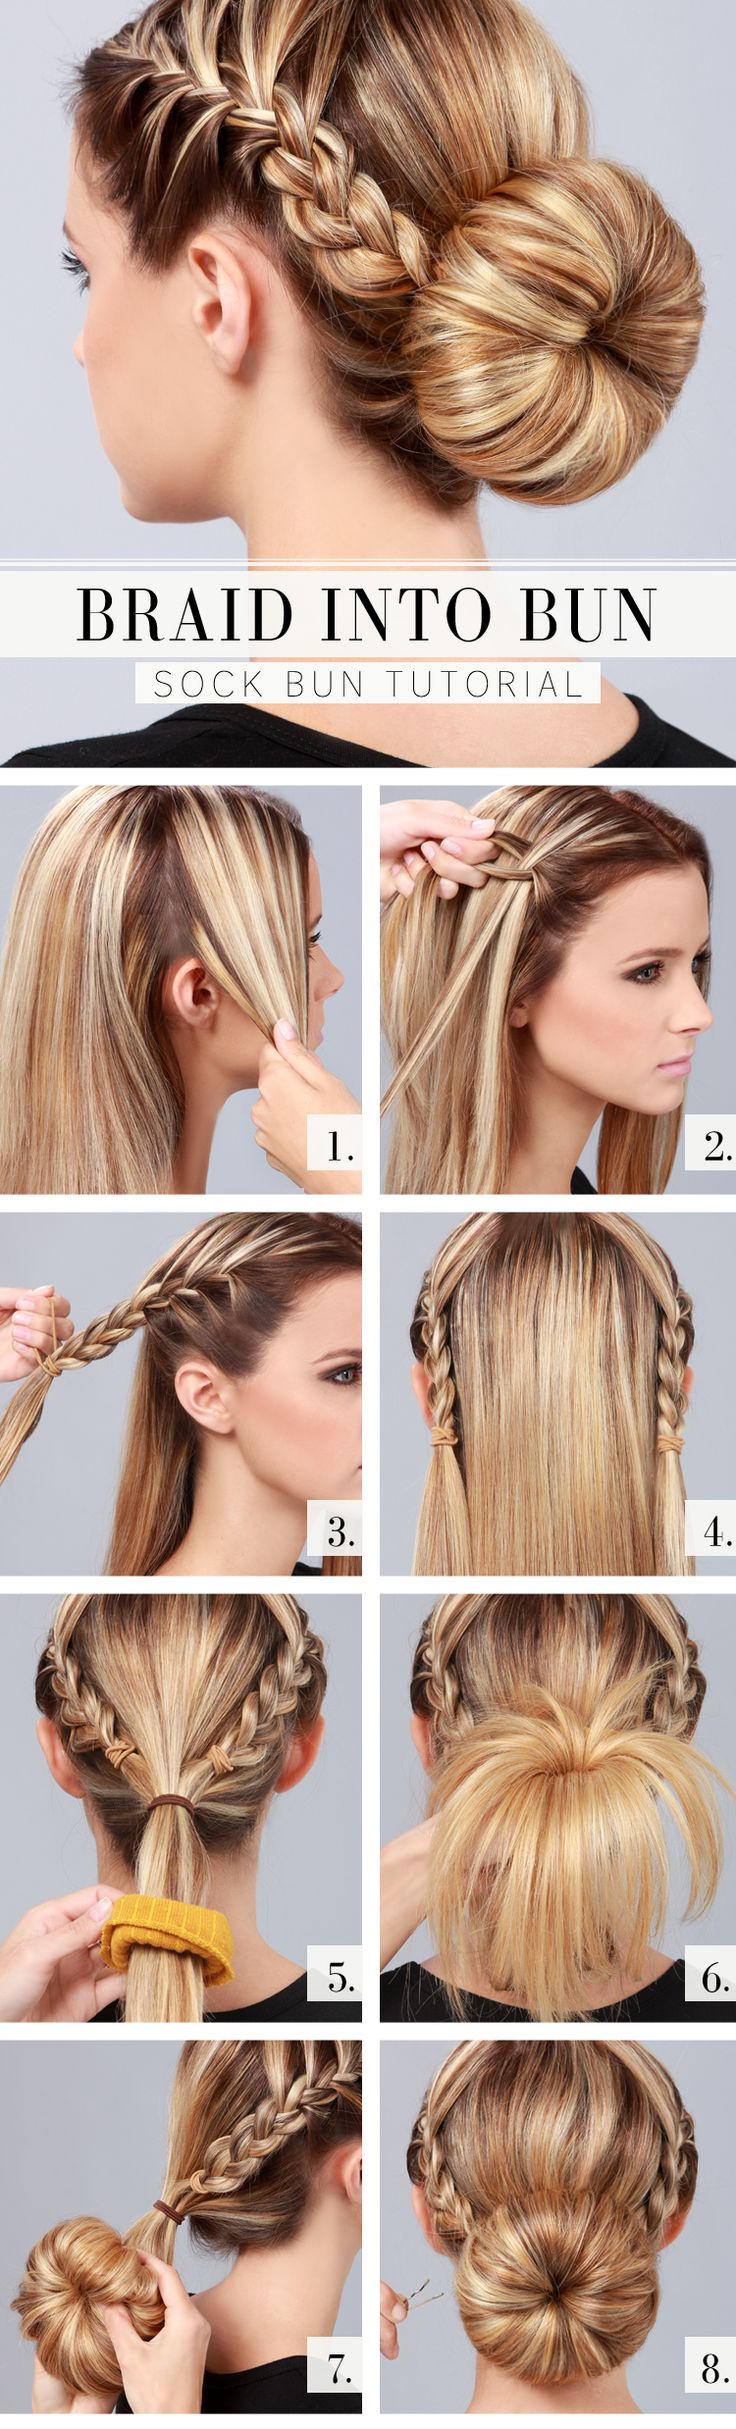 Sock Bun Hairstyle Tutorial | braid into a bun tutorial | summer hair styles | top 10 hairstyles for summer 2014: 